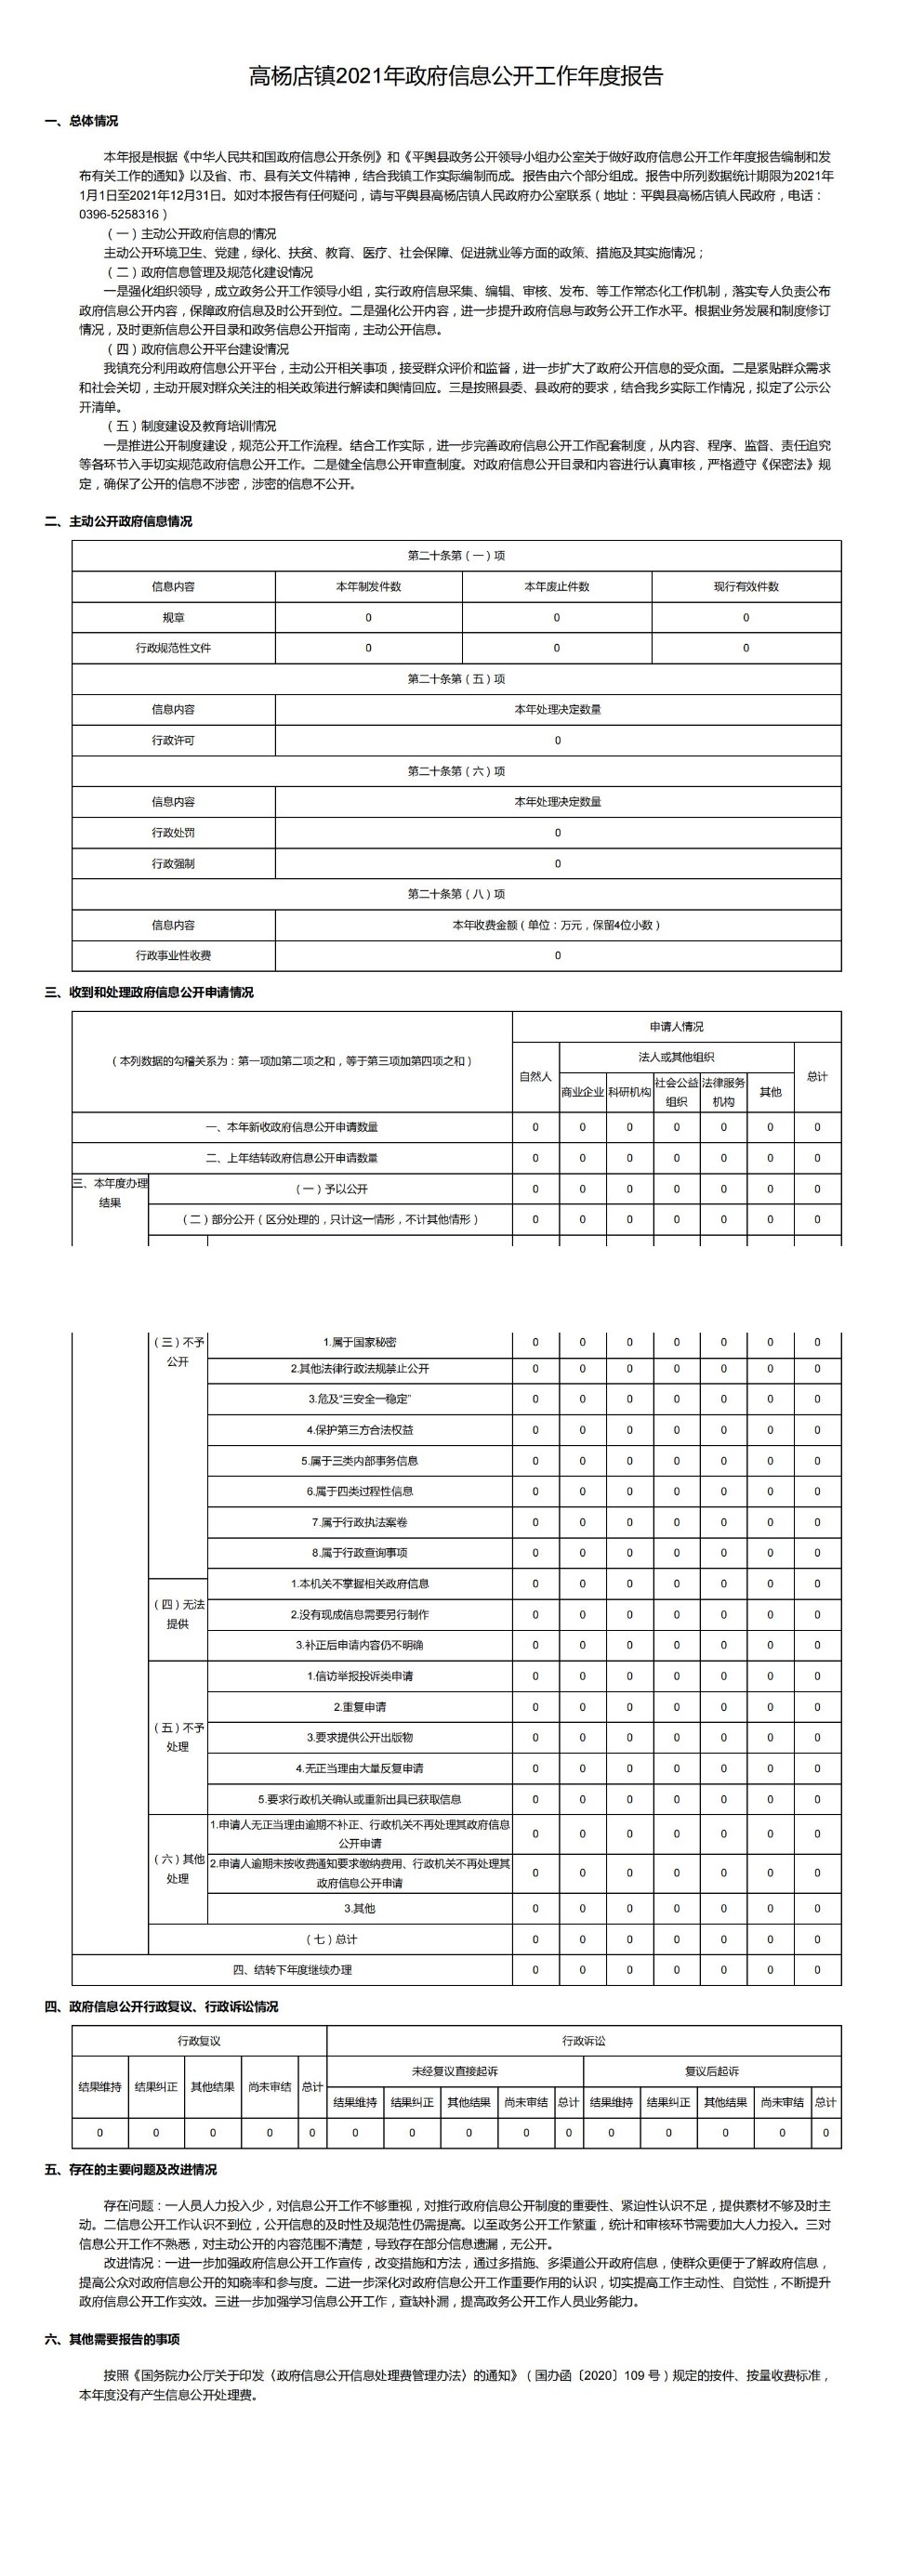 高杨店镇2021年政府信息公开工作年度报告_00.jpg